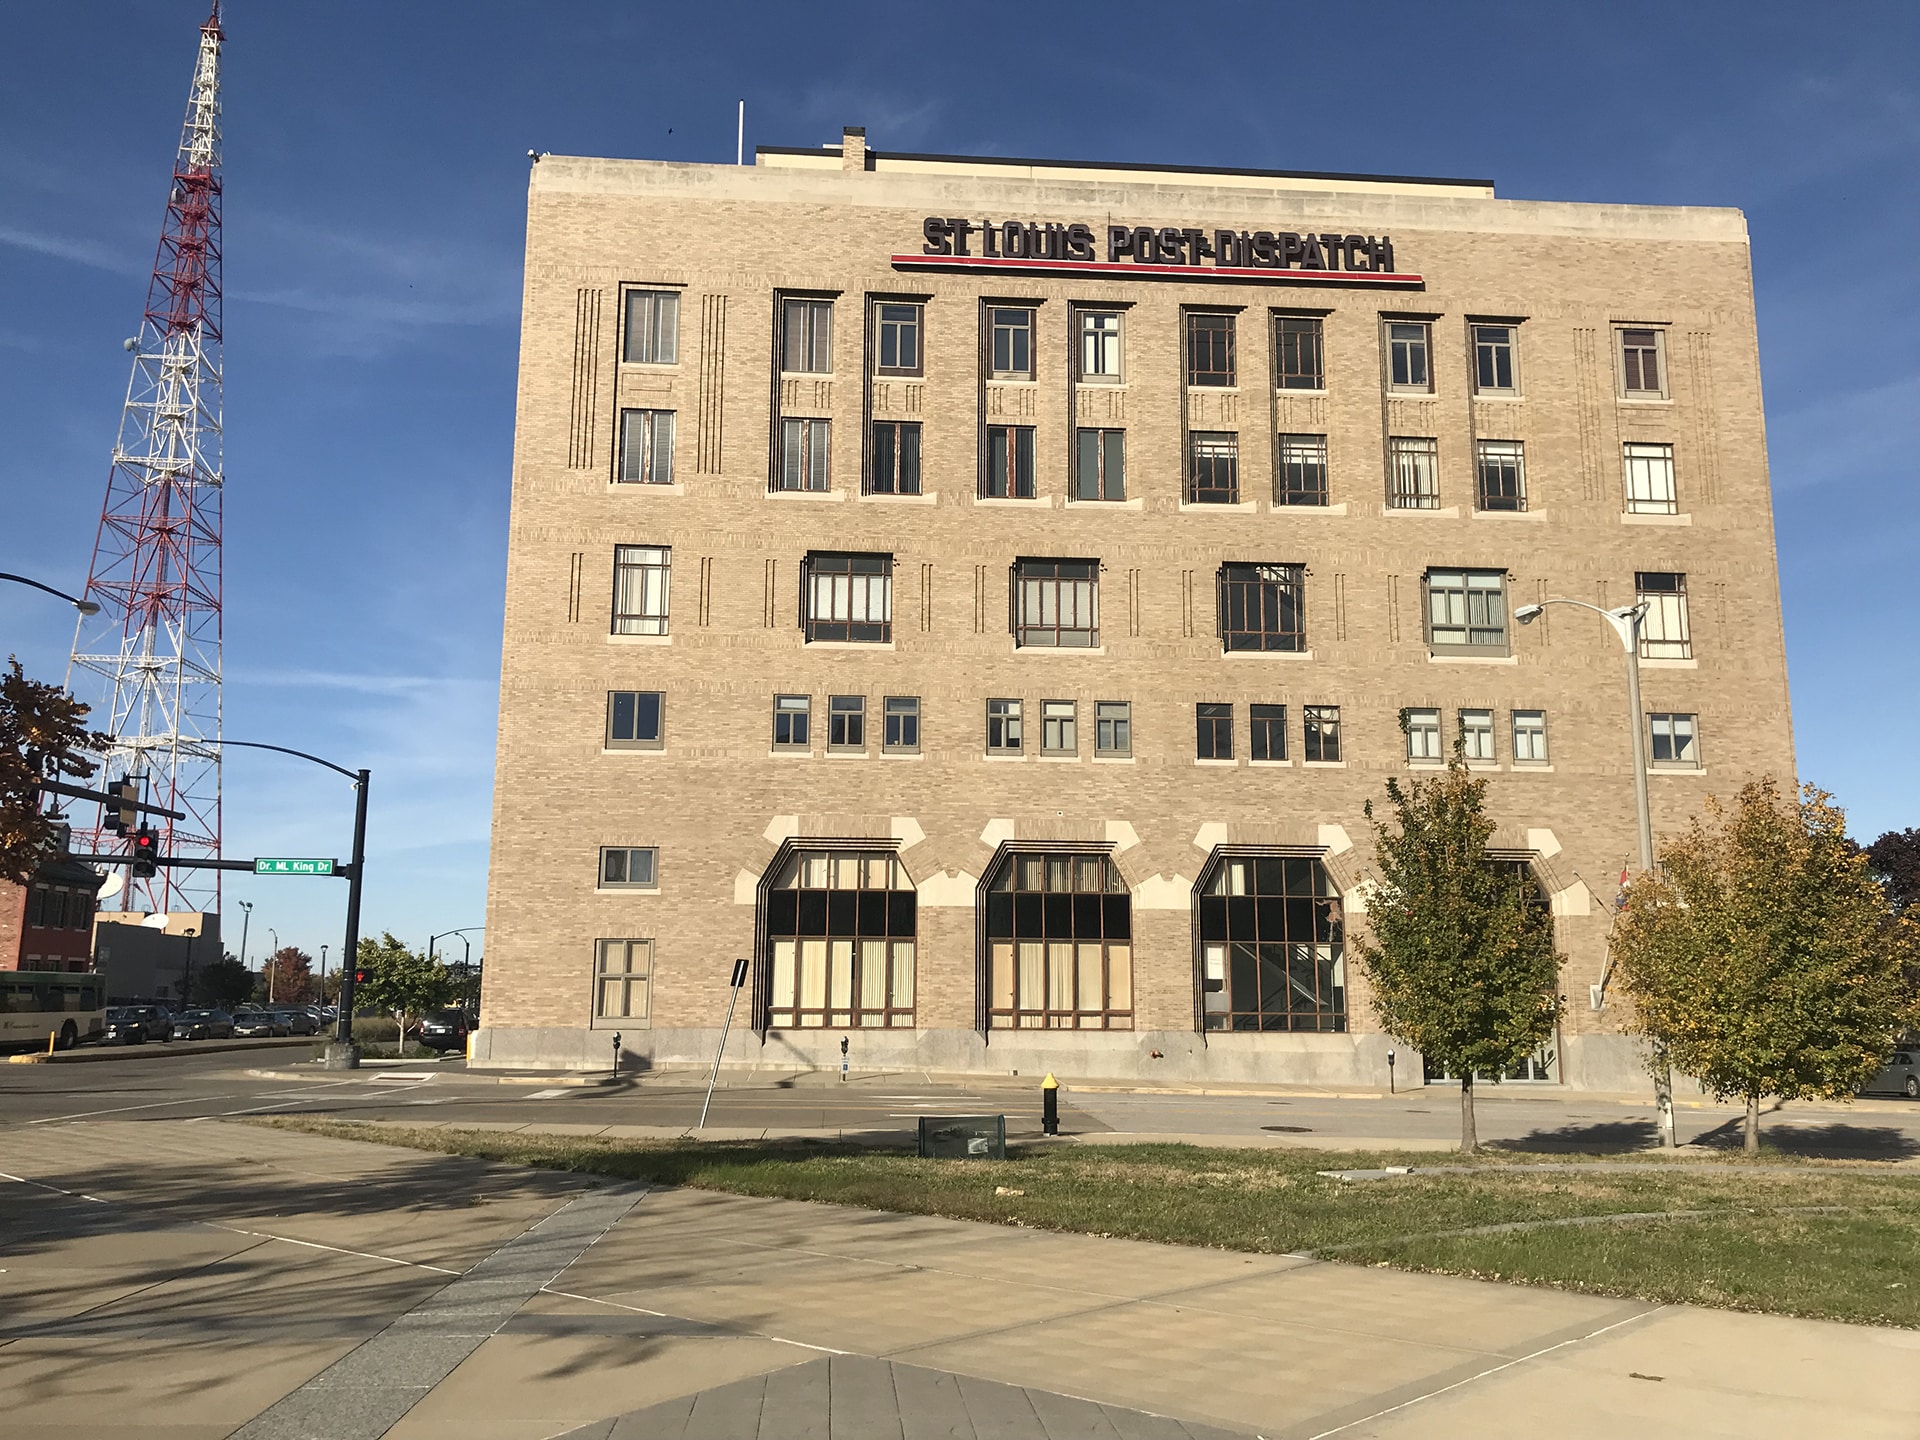 St. Louis Post Dispatch Building - Trivers